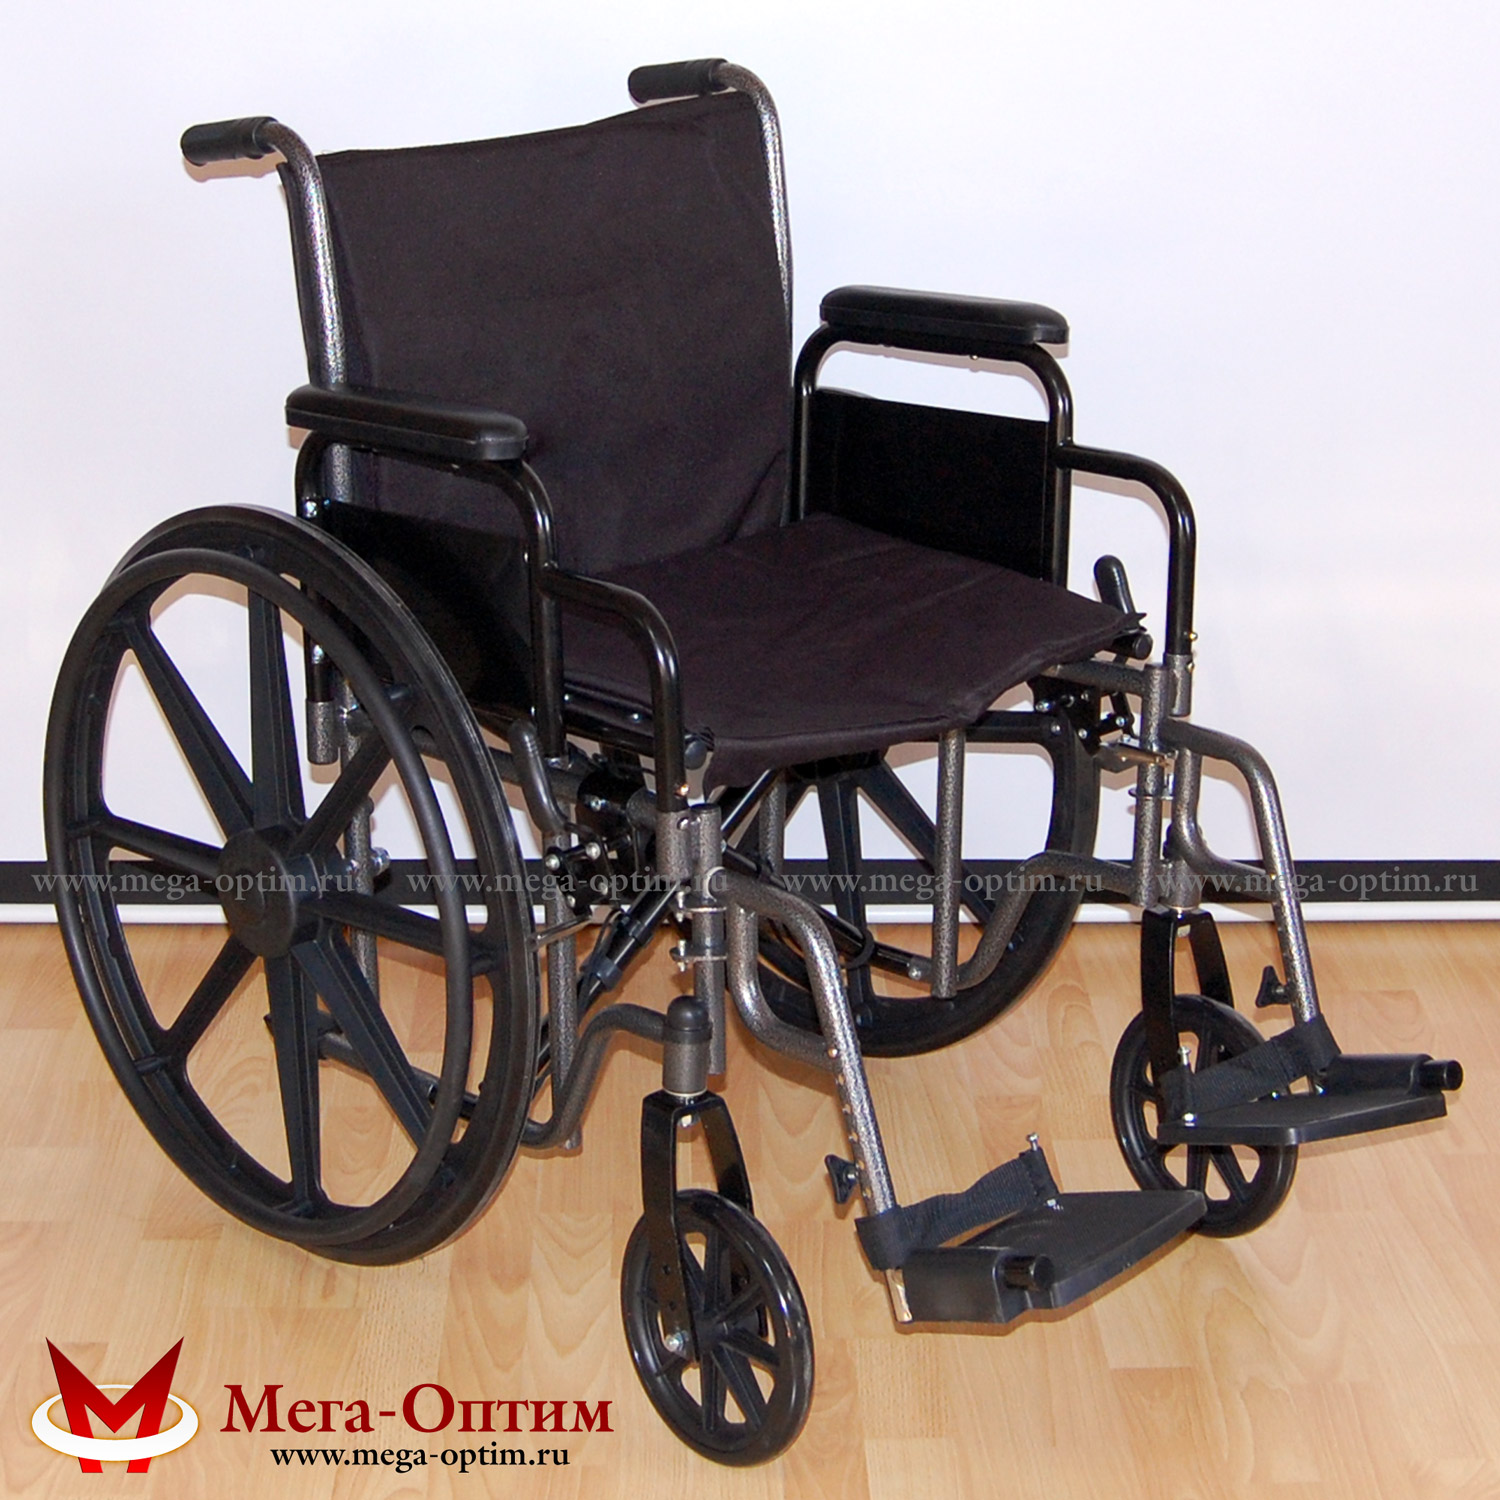 Инвалидная коляска регулируемая по ширине 511A-51 Мега-Оптим